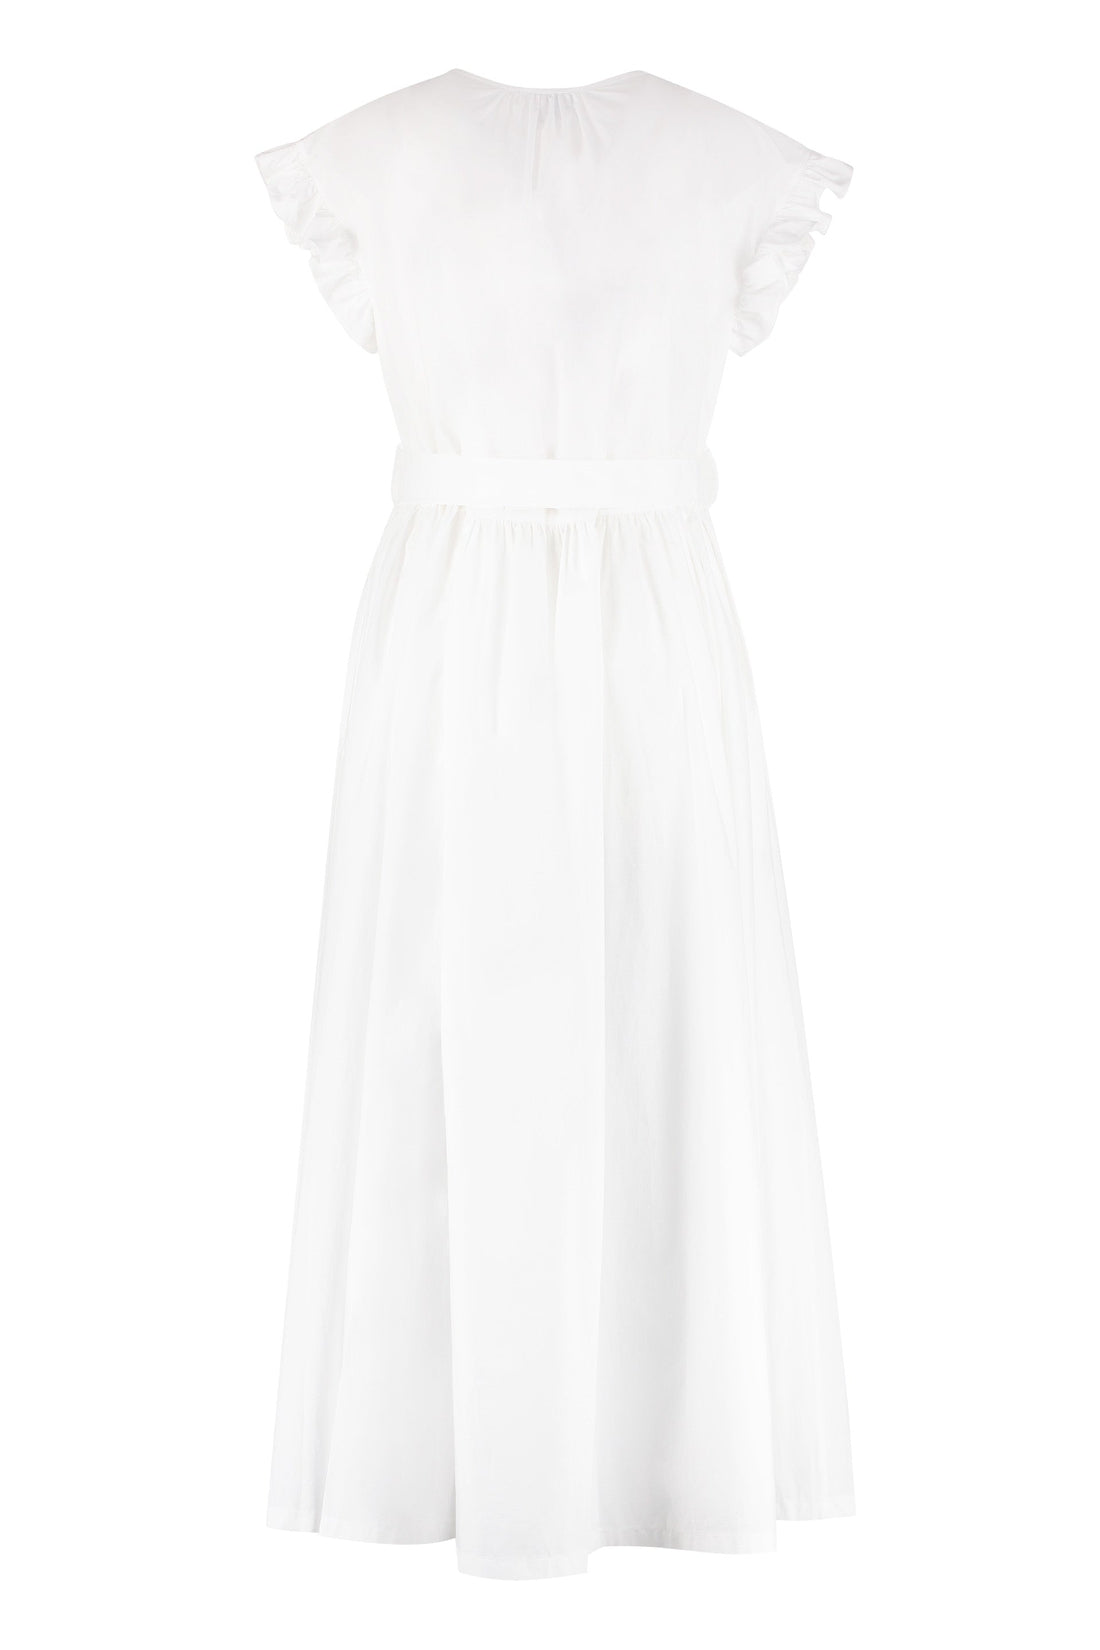 Patou-OUTLET-SALE-Cotton long dress-ARCHIVIST